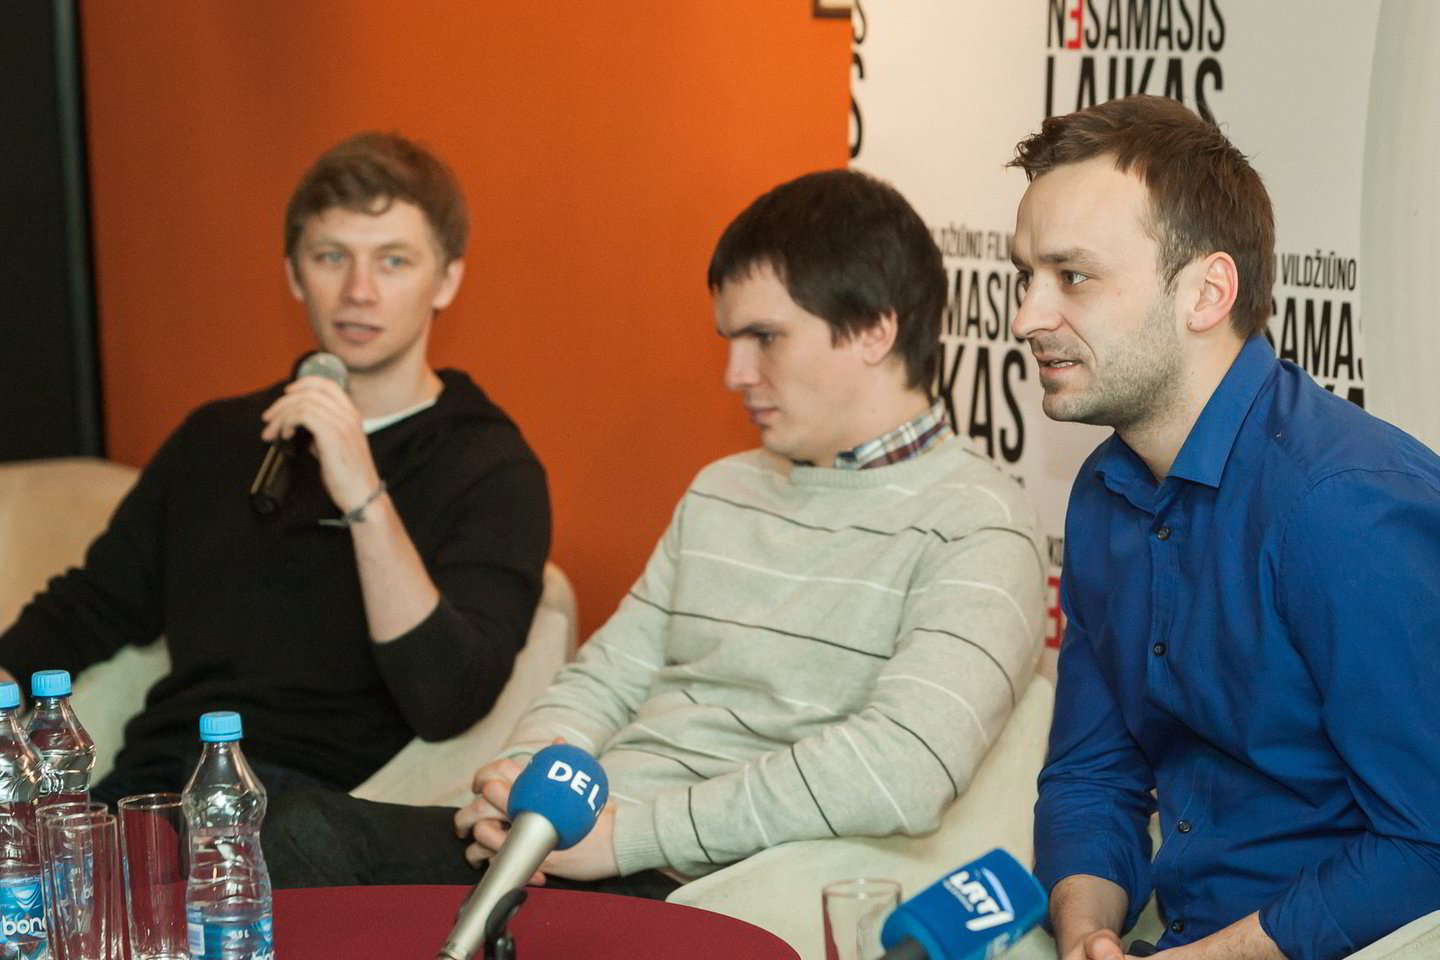 Filme "Nesamasis laikas" vaidina aktoriai (iš kairės) T.Grynas, M.Papinigis, V.Novopolskis.<br>M.Ambrazo (ELTA) nuotr.